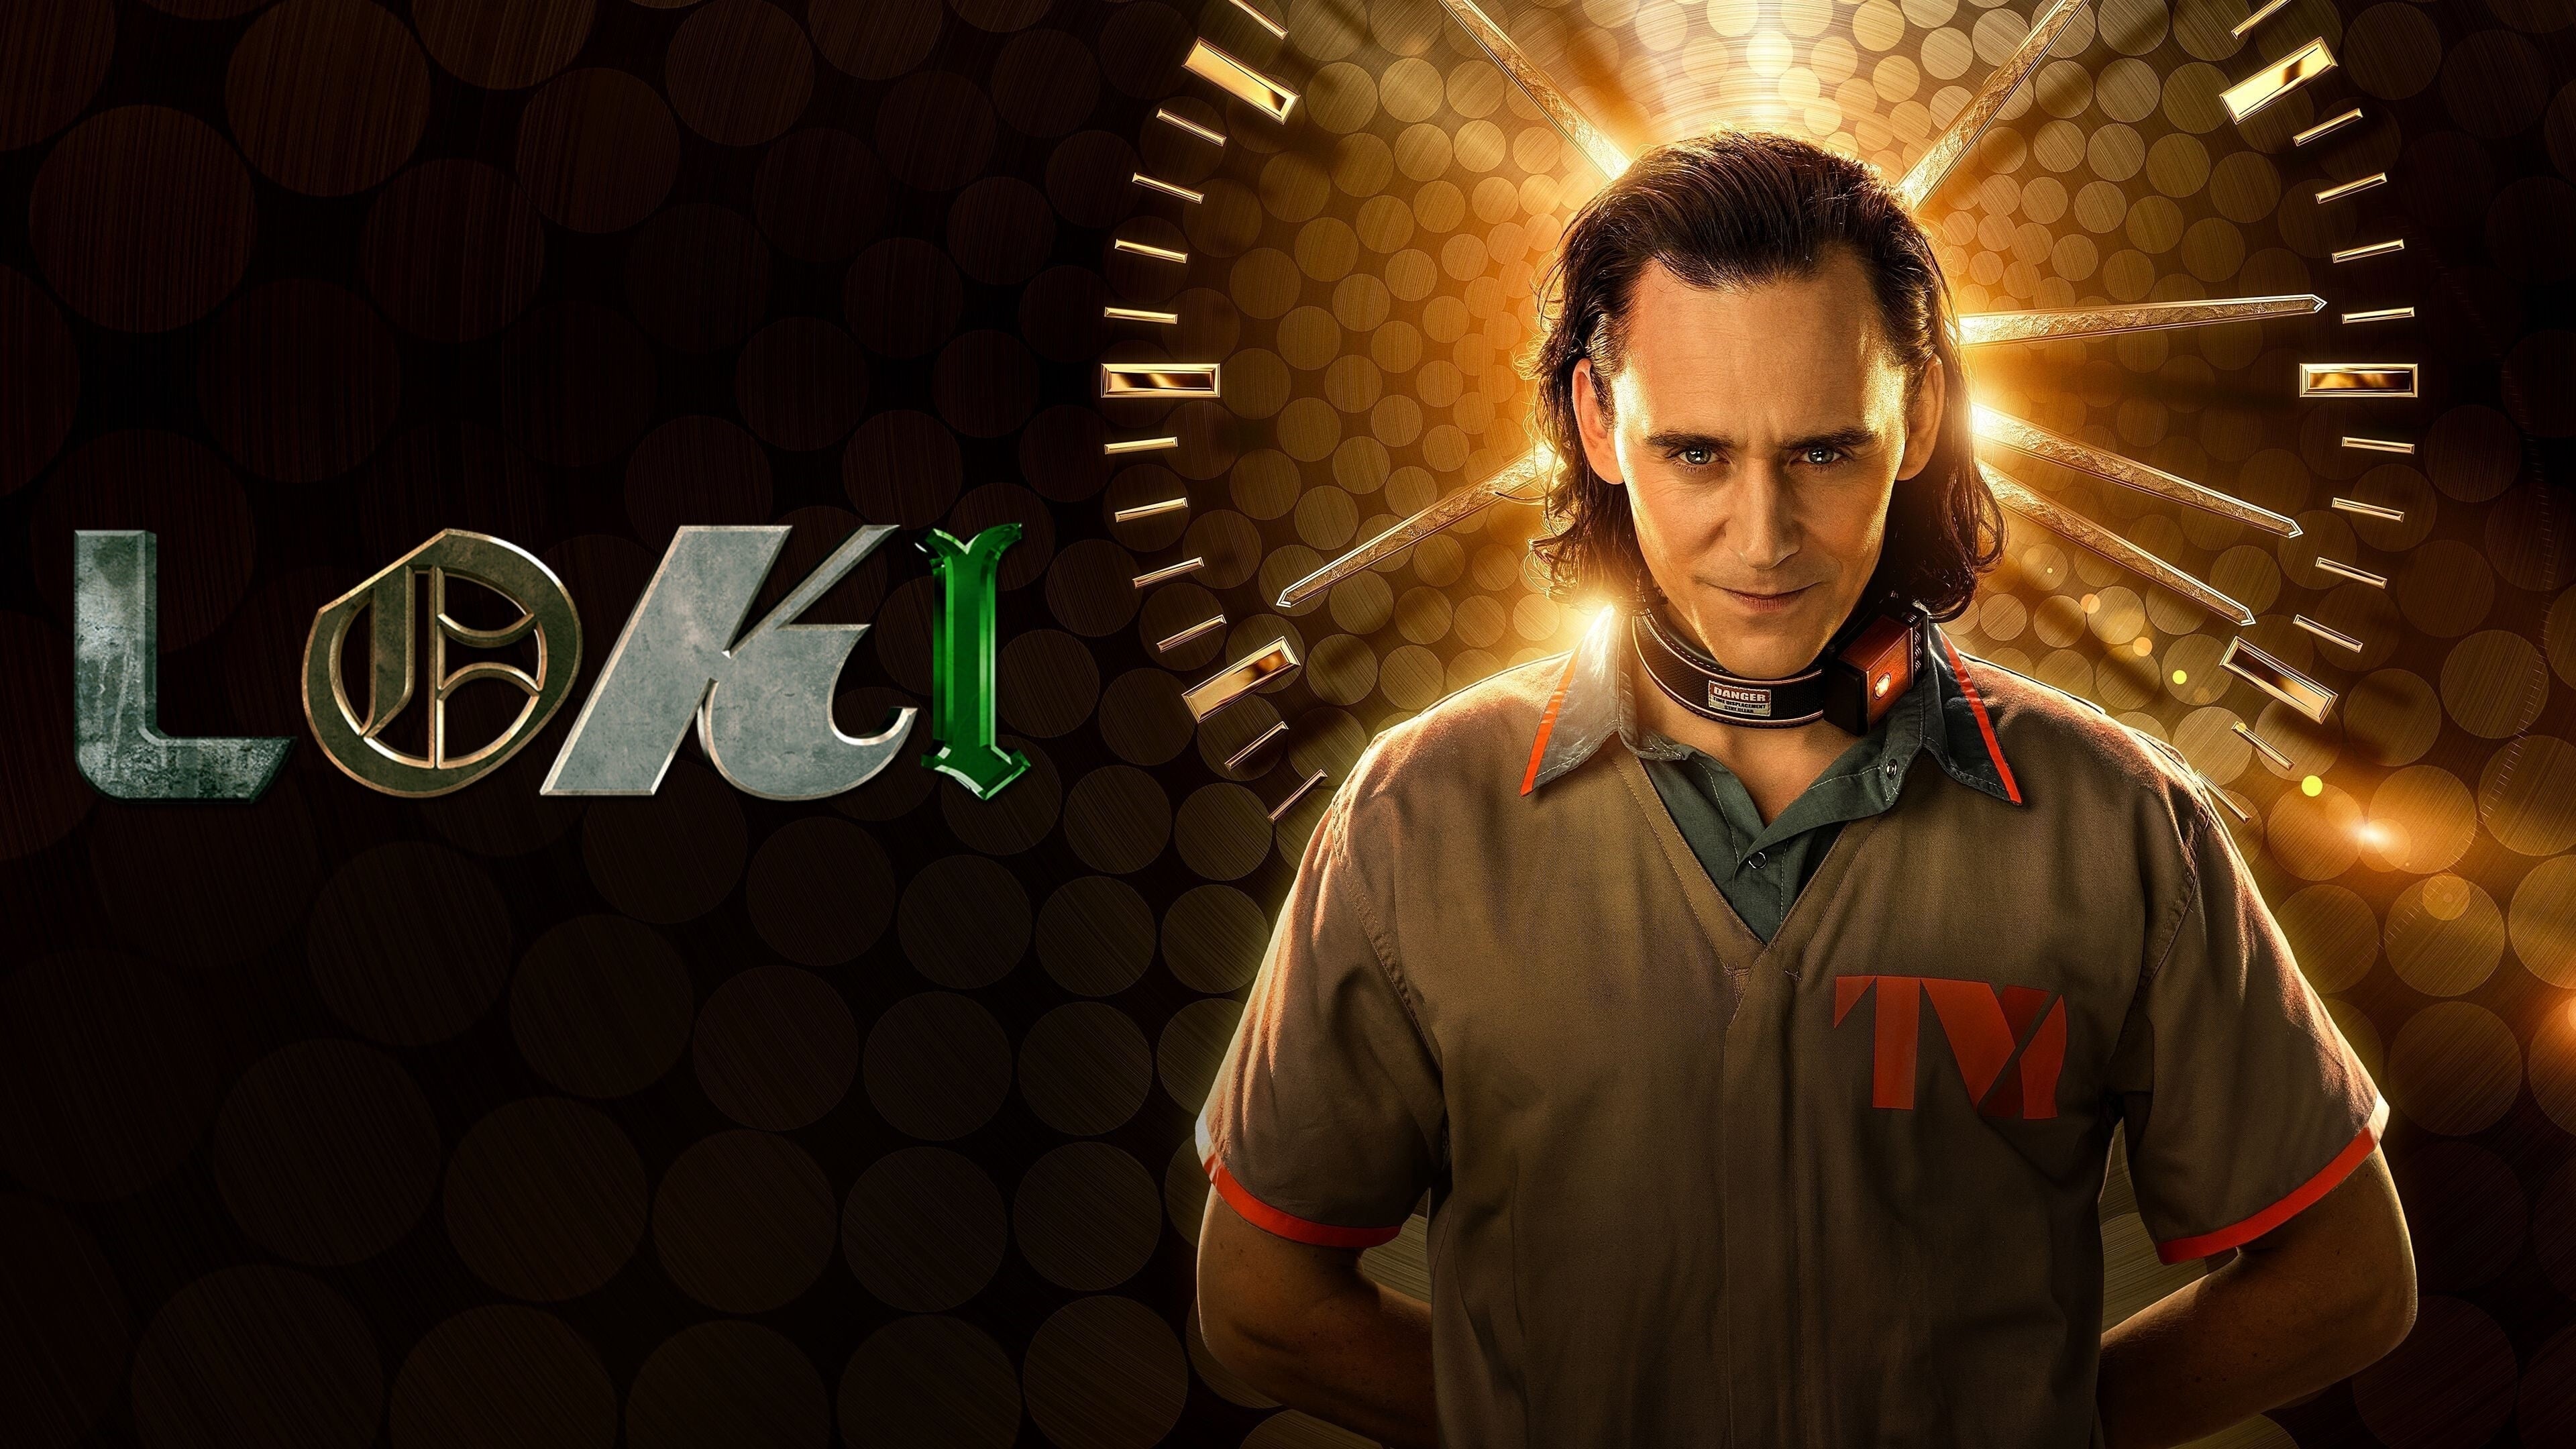 Temporada 2 de Loki ganha novo vídeo promocional